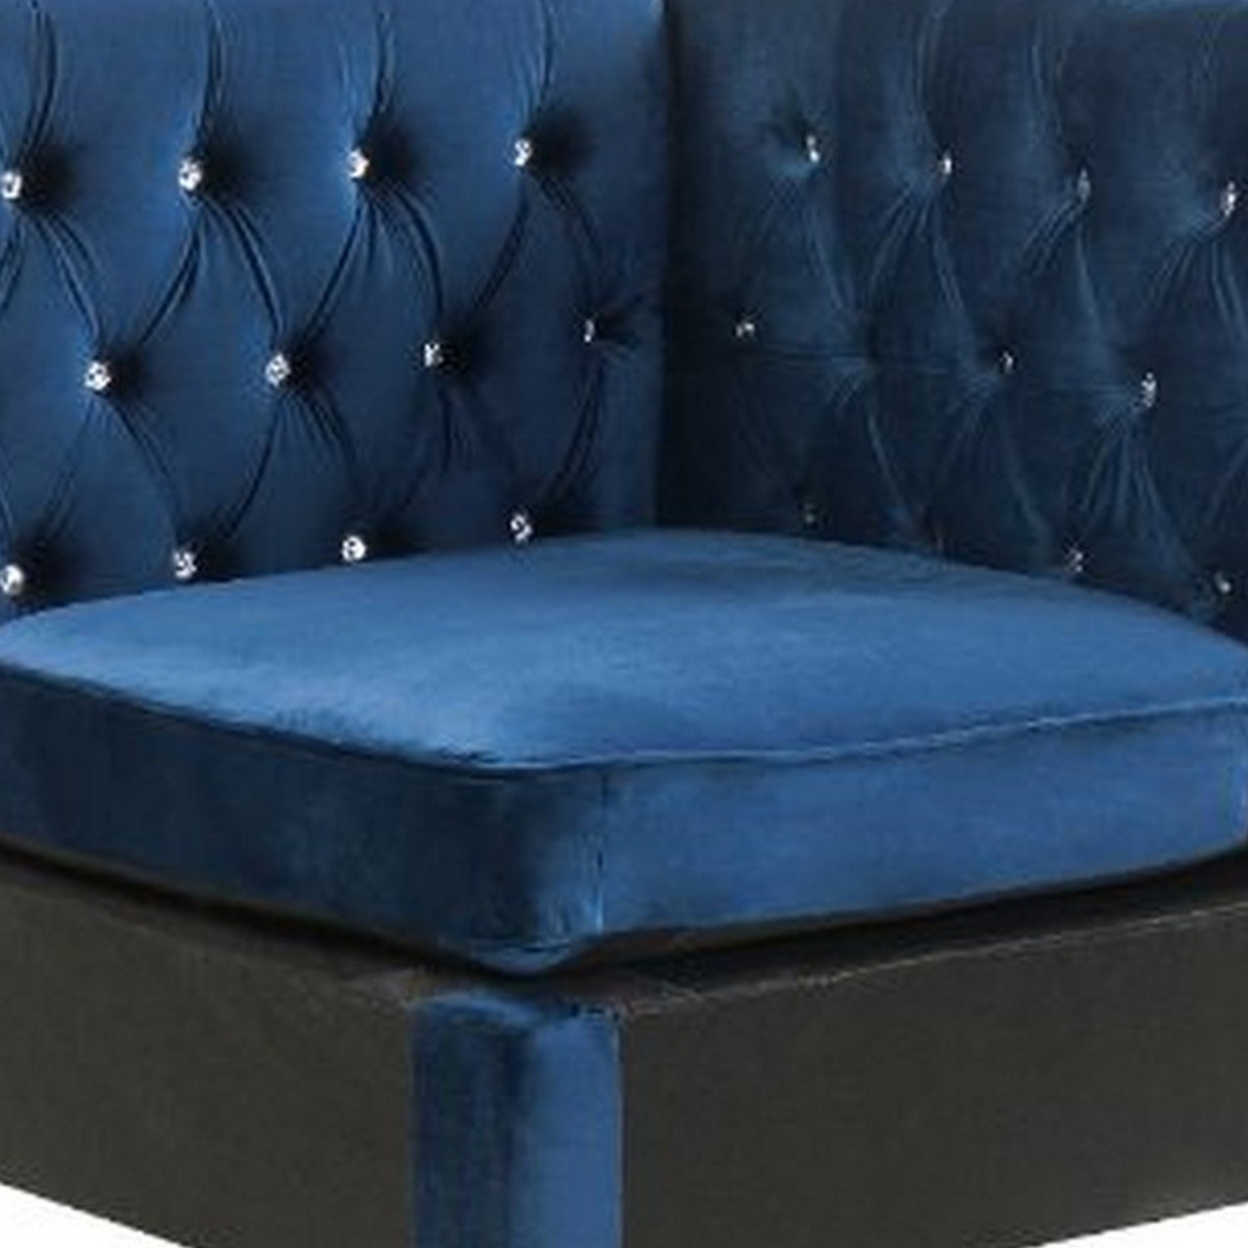 Corner Wedge With Velvet Upholstery And Metal Legs, Blue- Saltoro Sherpi